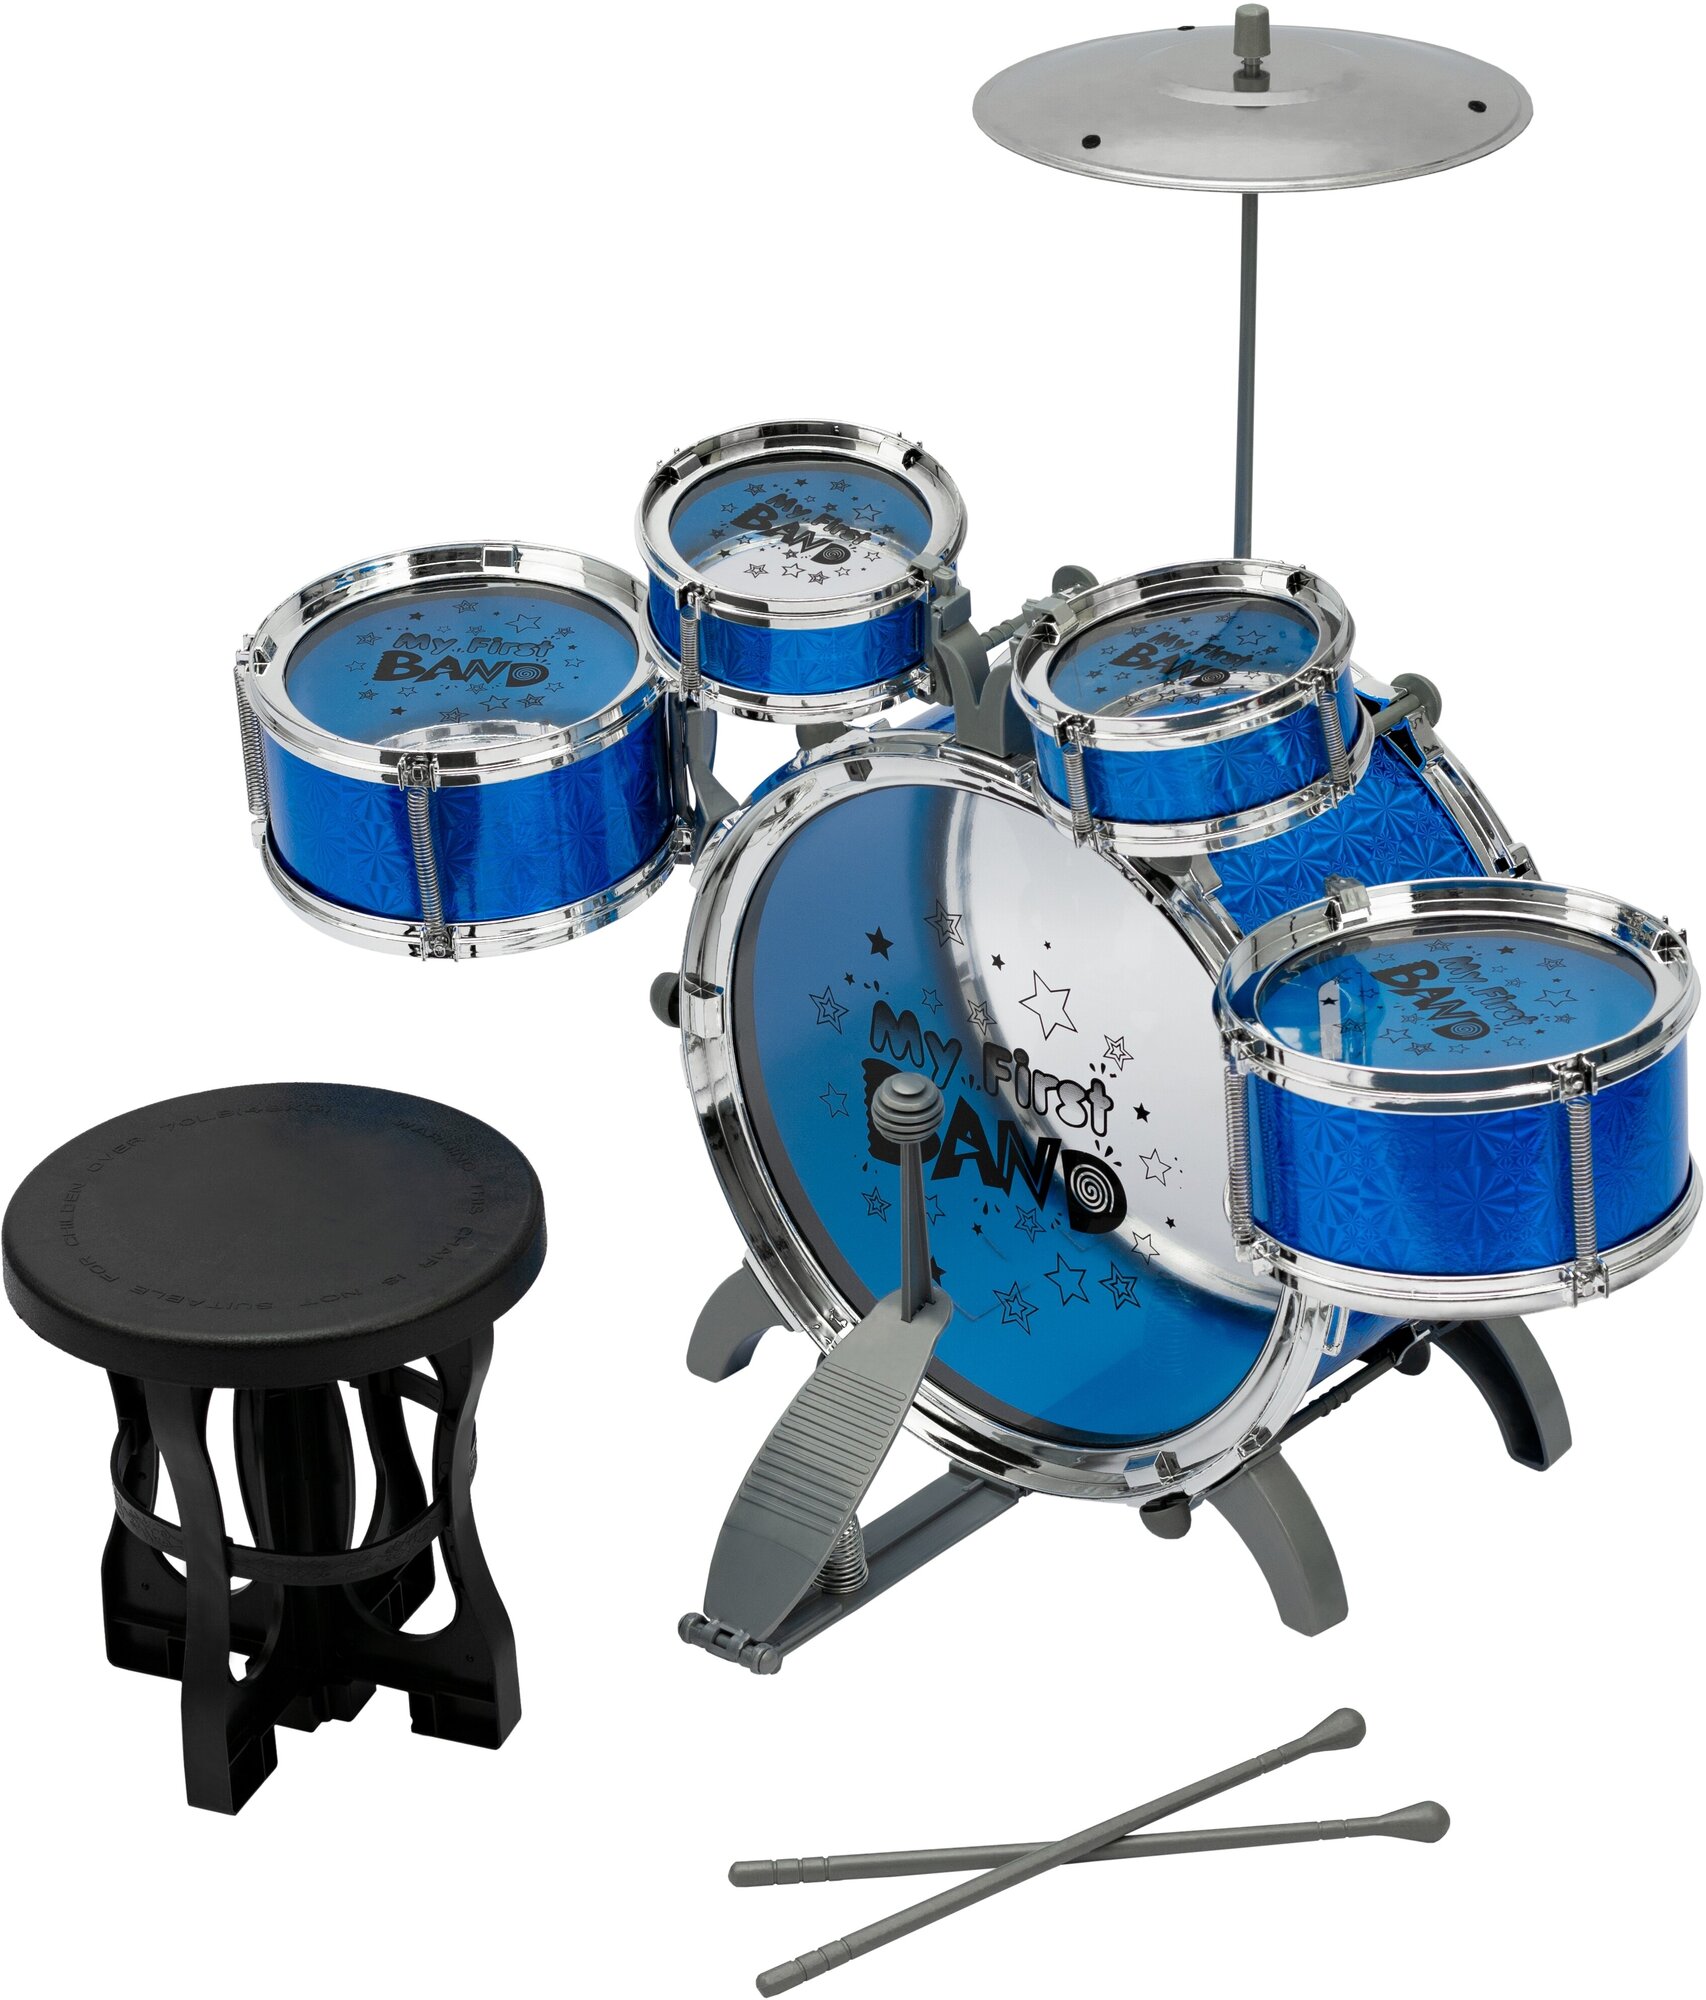 Детская барабанная установка синяя со стульчиком (4008Е)